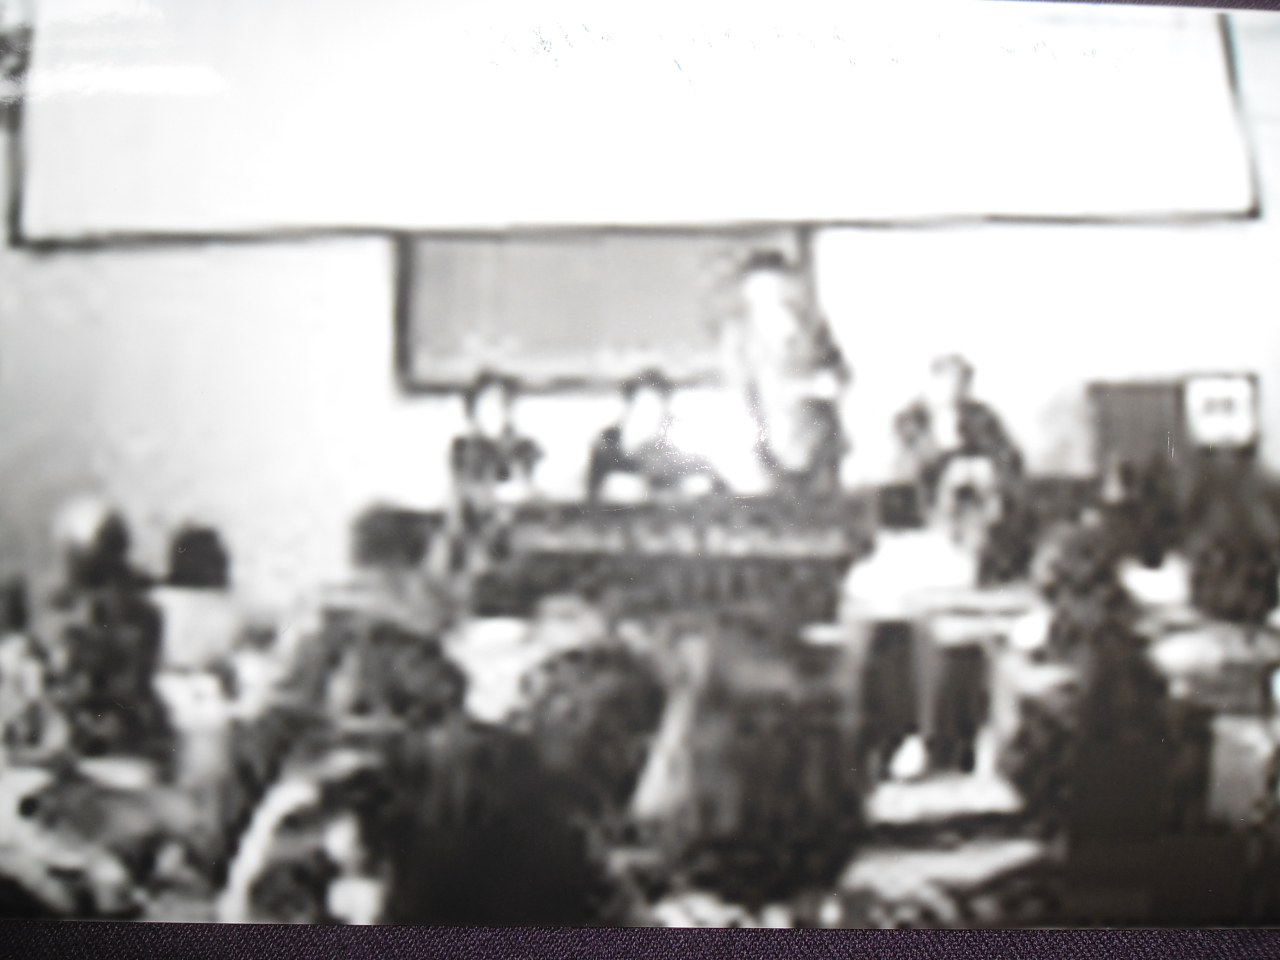 Հրանտ Գևորգի Բատիկյանը  ( Կենսաբան-գենետիկ, ՀԽՍՀ գիտության վաստակավոր գործիչ, կենսաբանական գիտությունների դոկտոր, պրոֆեսոր) գիտաժողովի ժամանակ